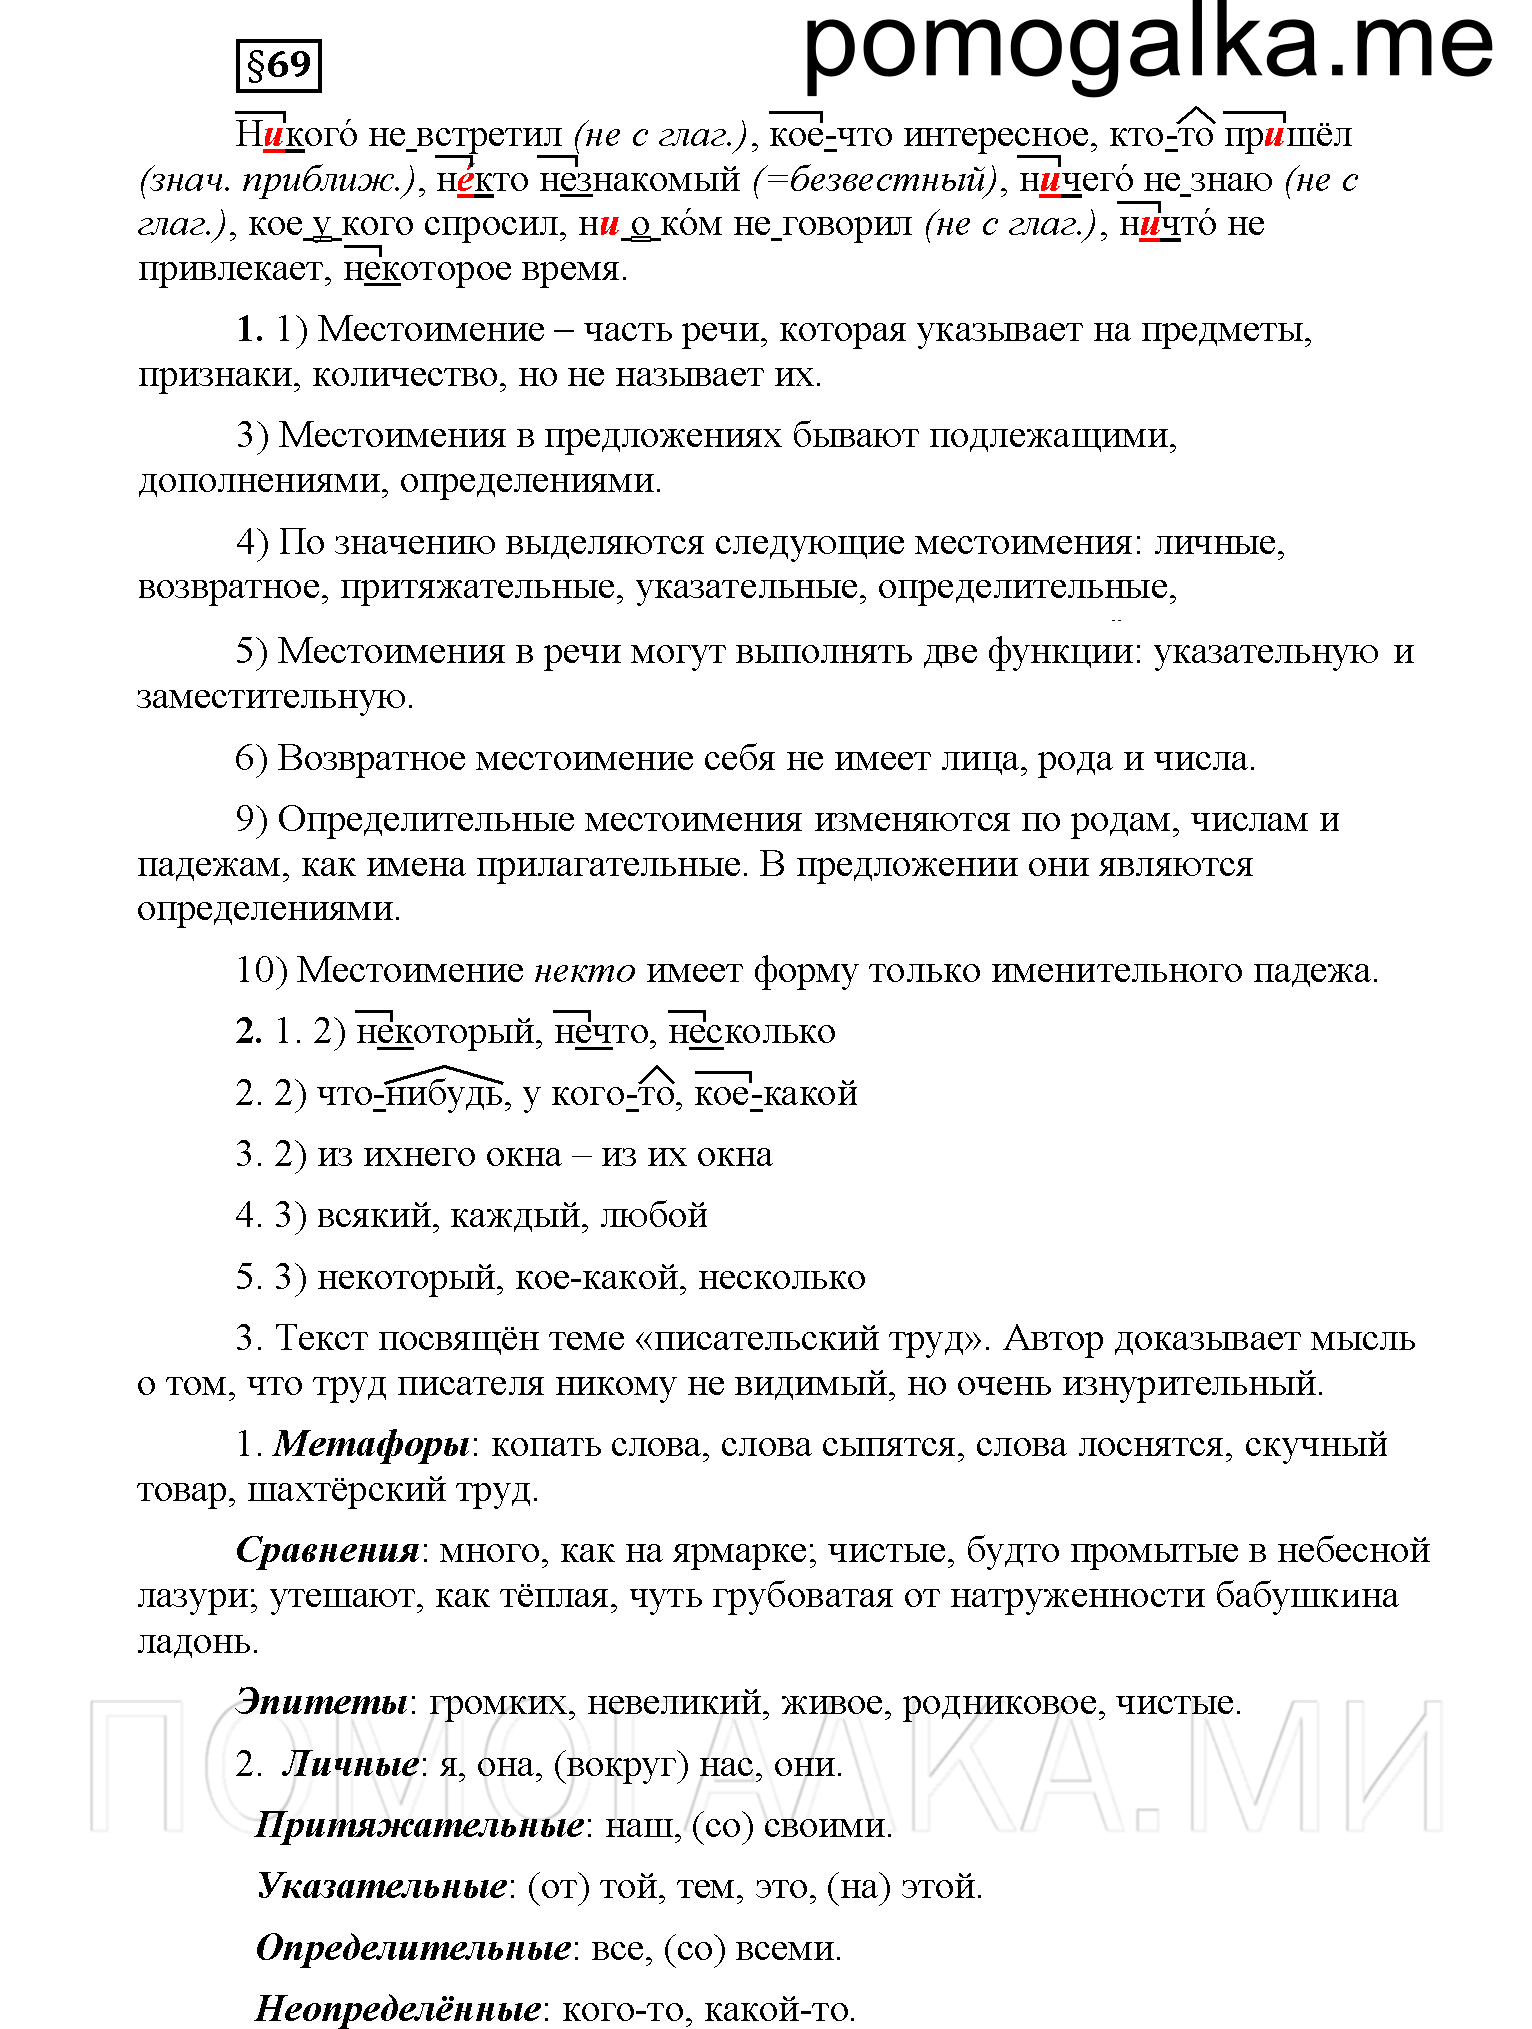 Страница 92, Дополнителые вопросы 6 класс Рыбченкова